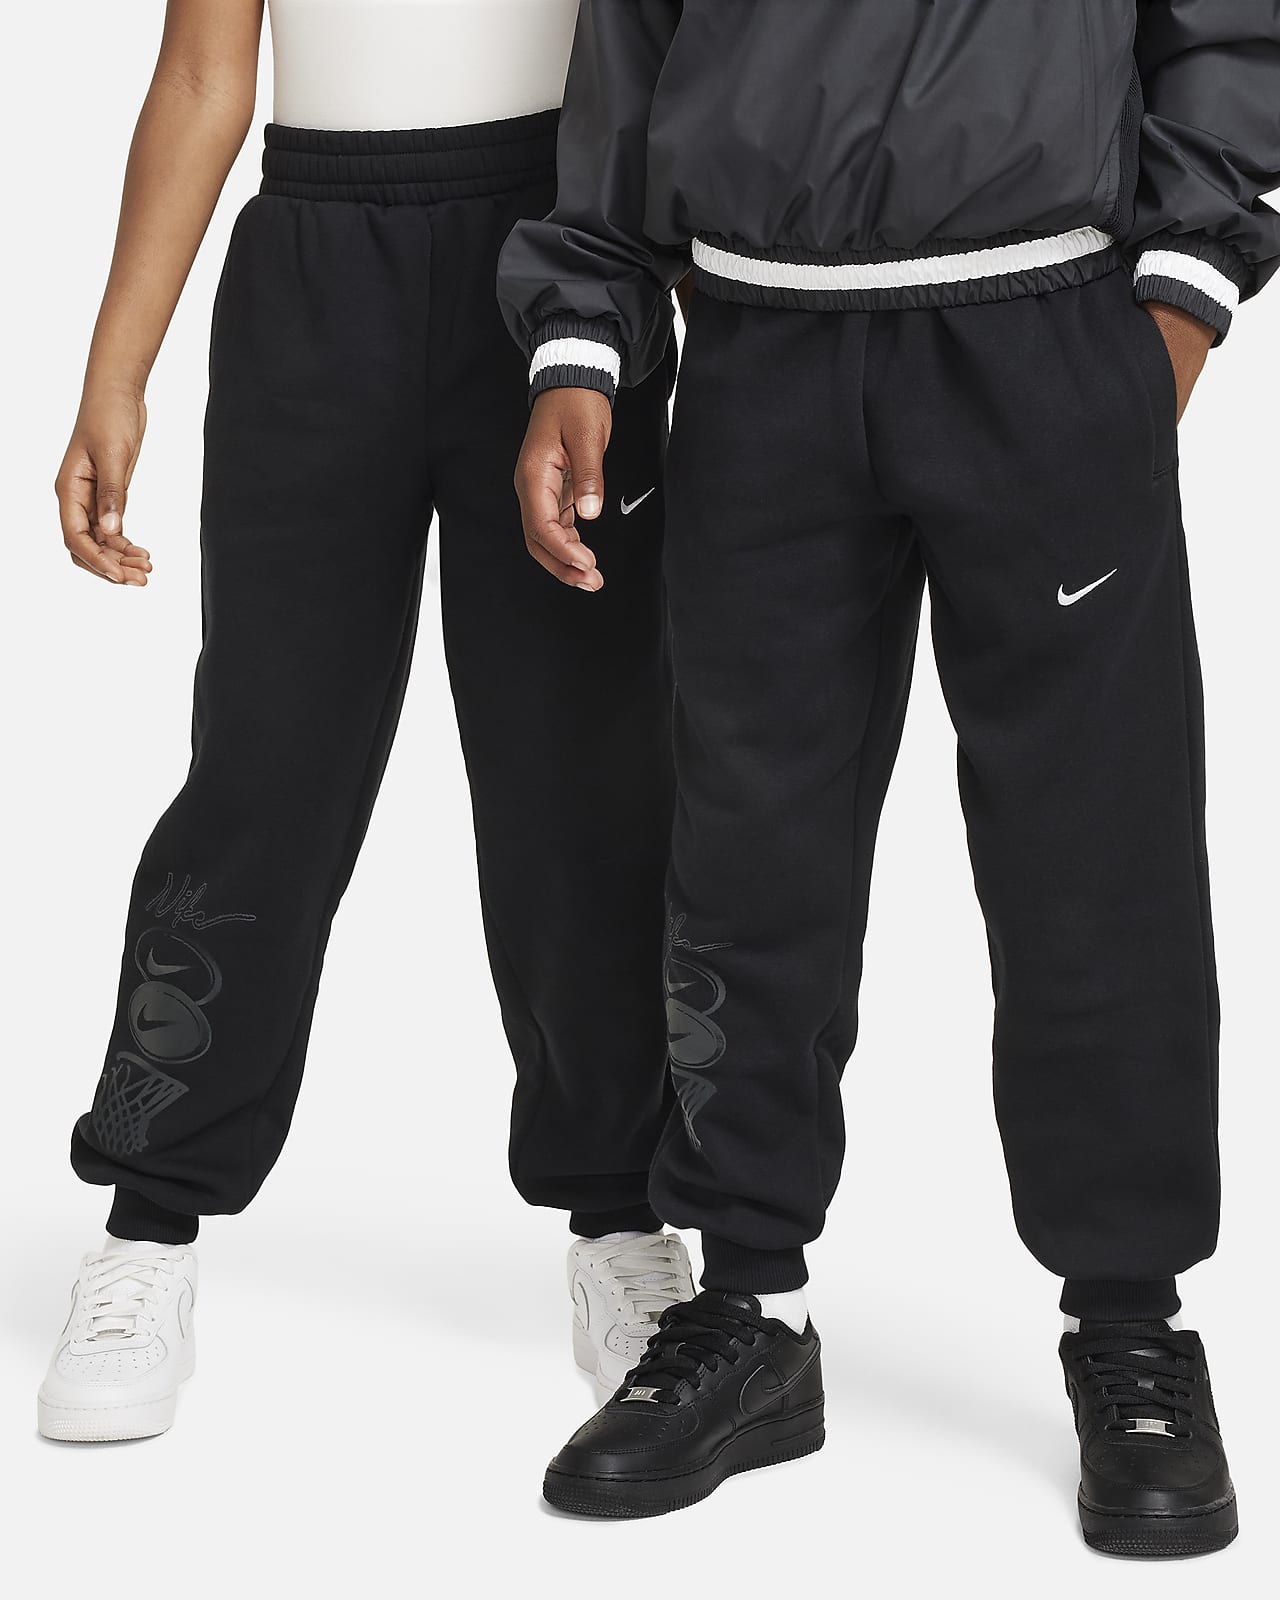 Φλις παντελόνι Nike Culture of Basketball για μεγάλα παιδιά